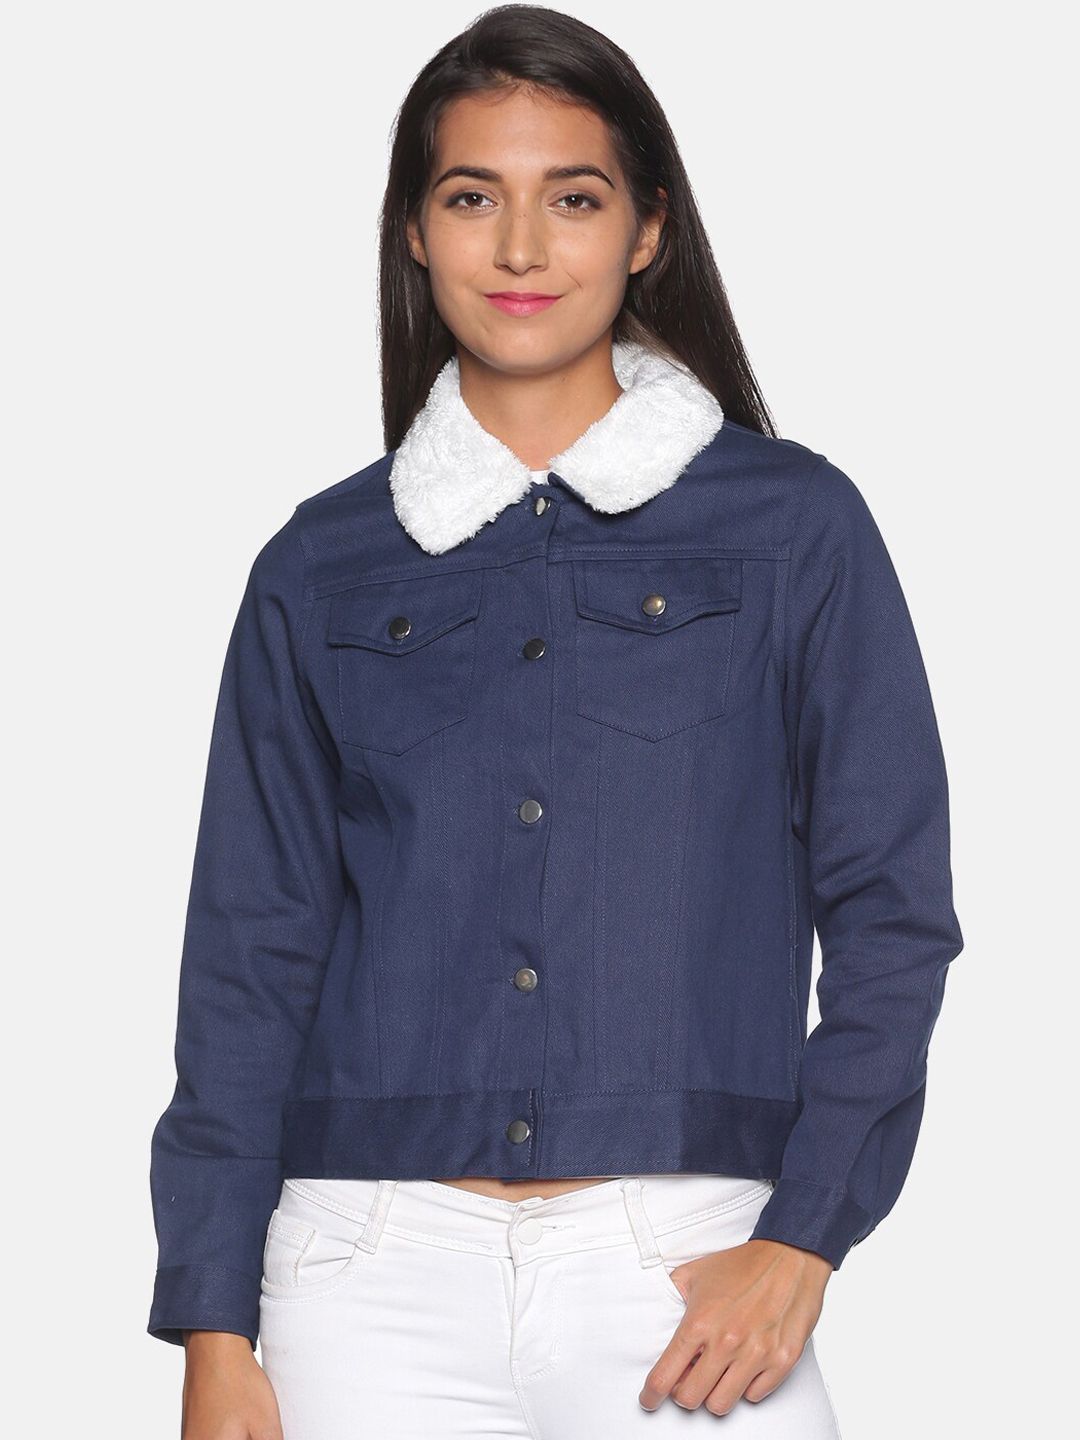 Campus Sutra Women Navy Blue & White Windcheater Denim Jacket Price in India